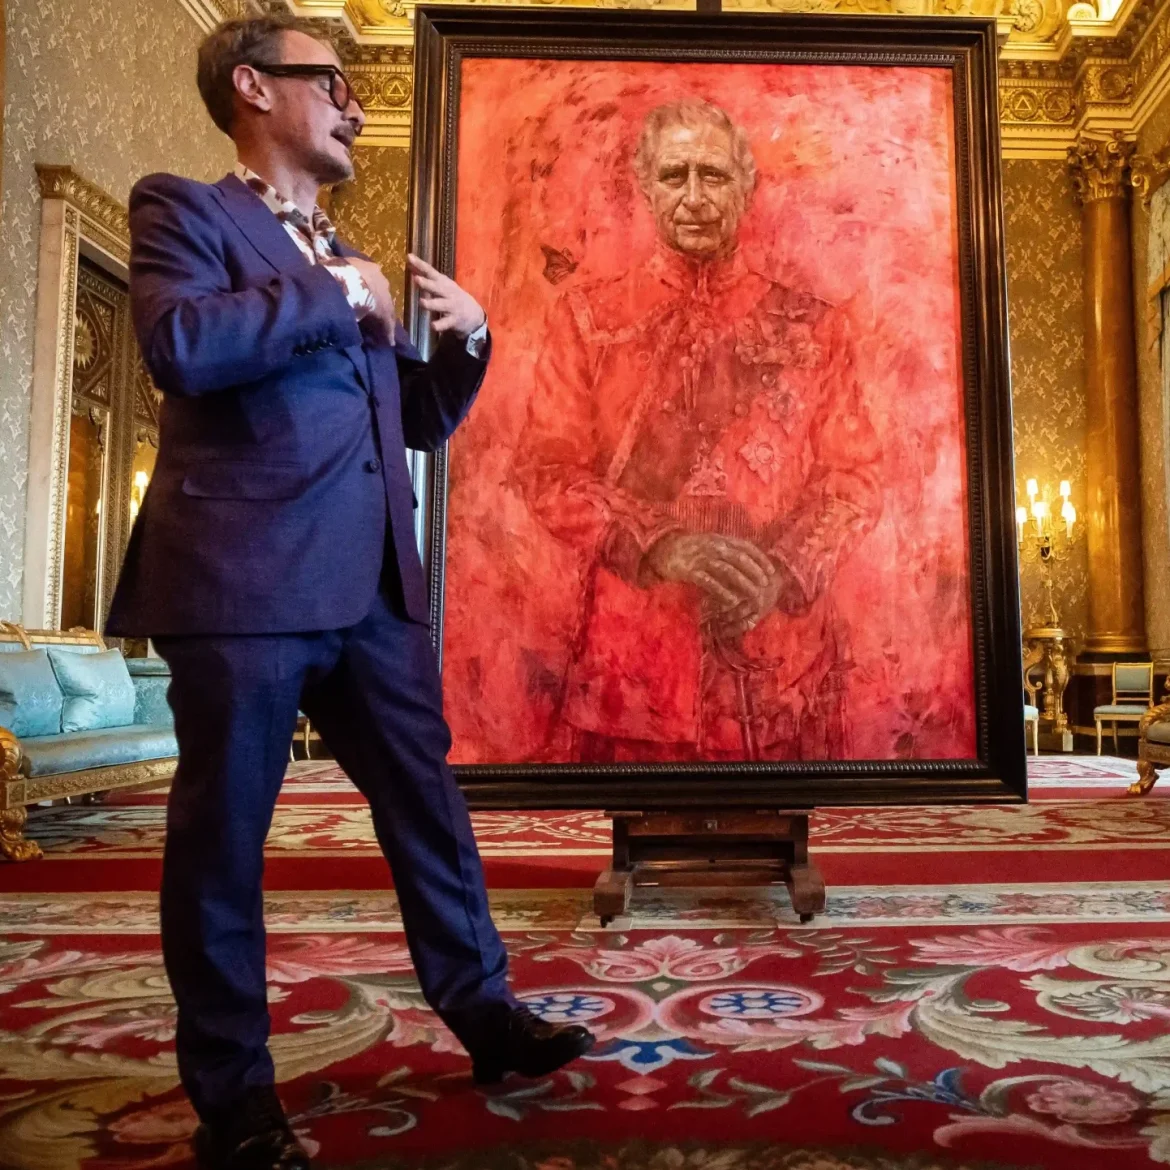 Kunstenaar kan wel lachen om reacties op zijn portret van koning Charles